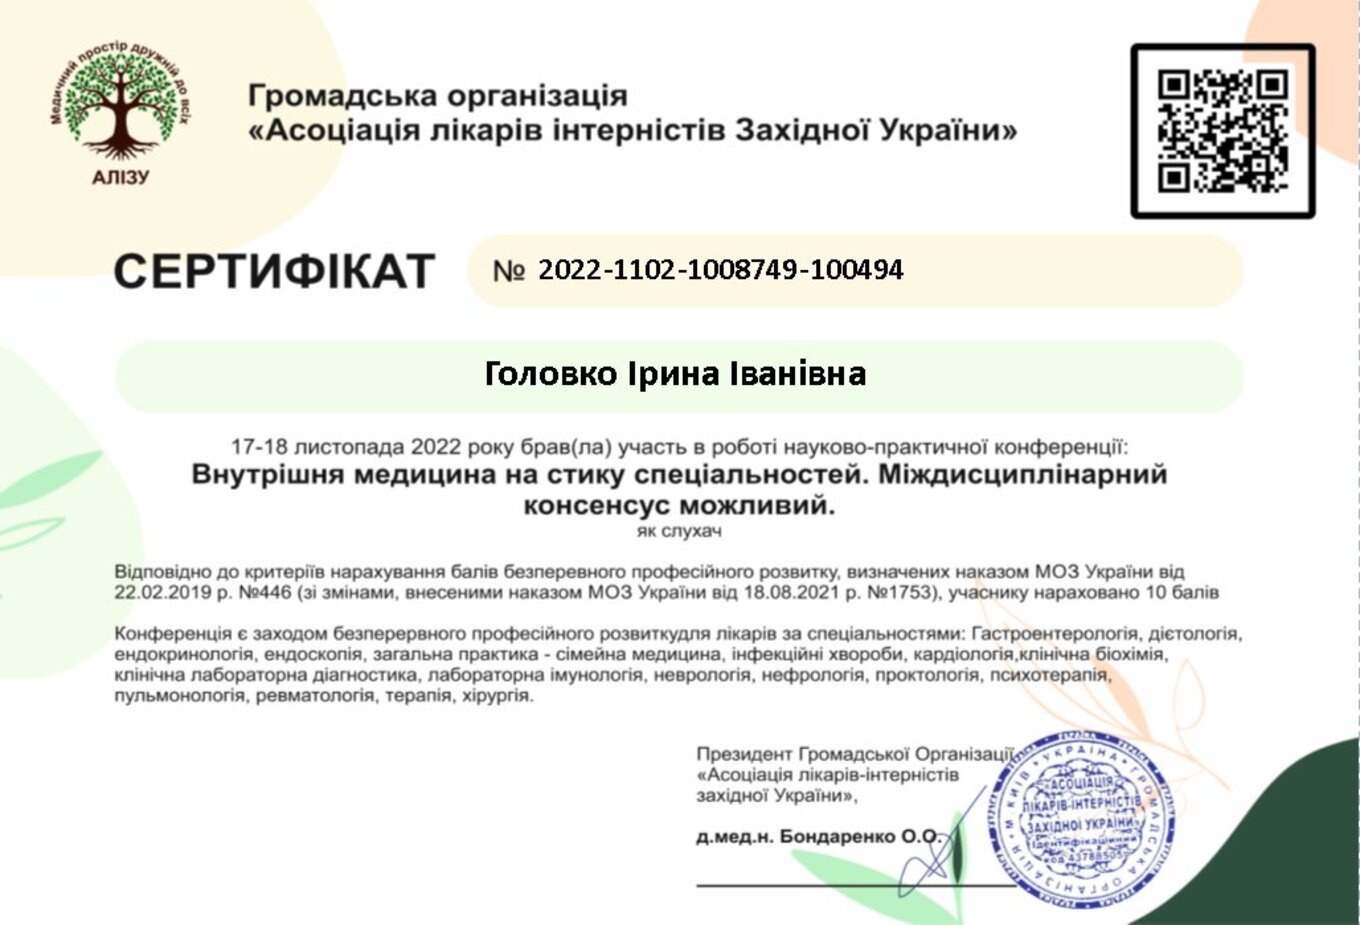 Golovko Irina Ivanivna sertifikat4